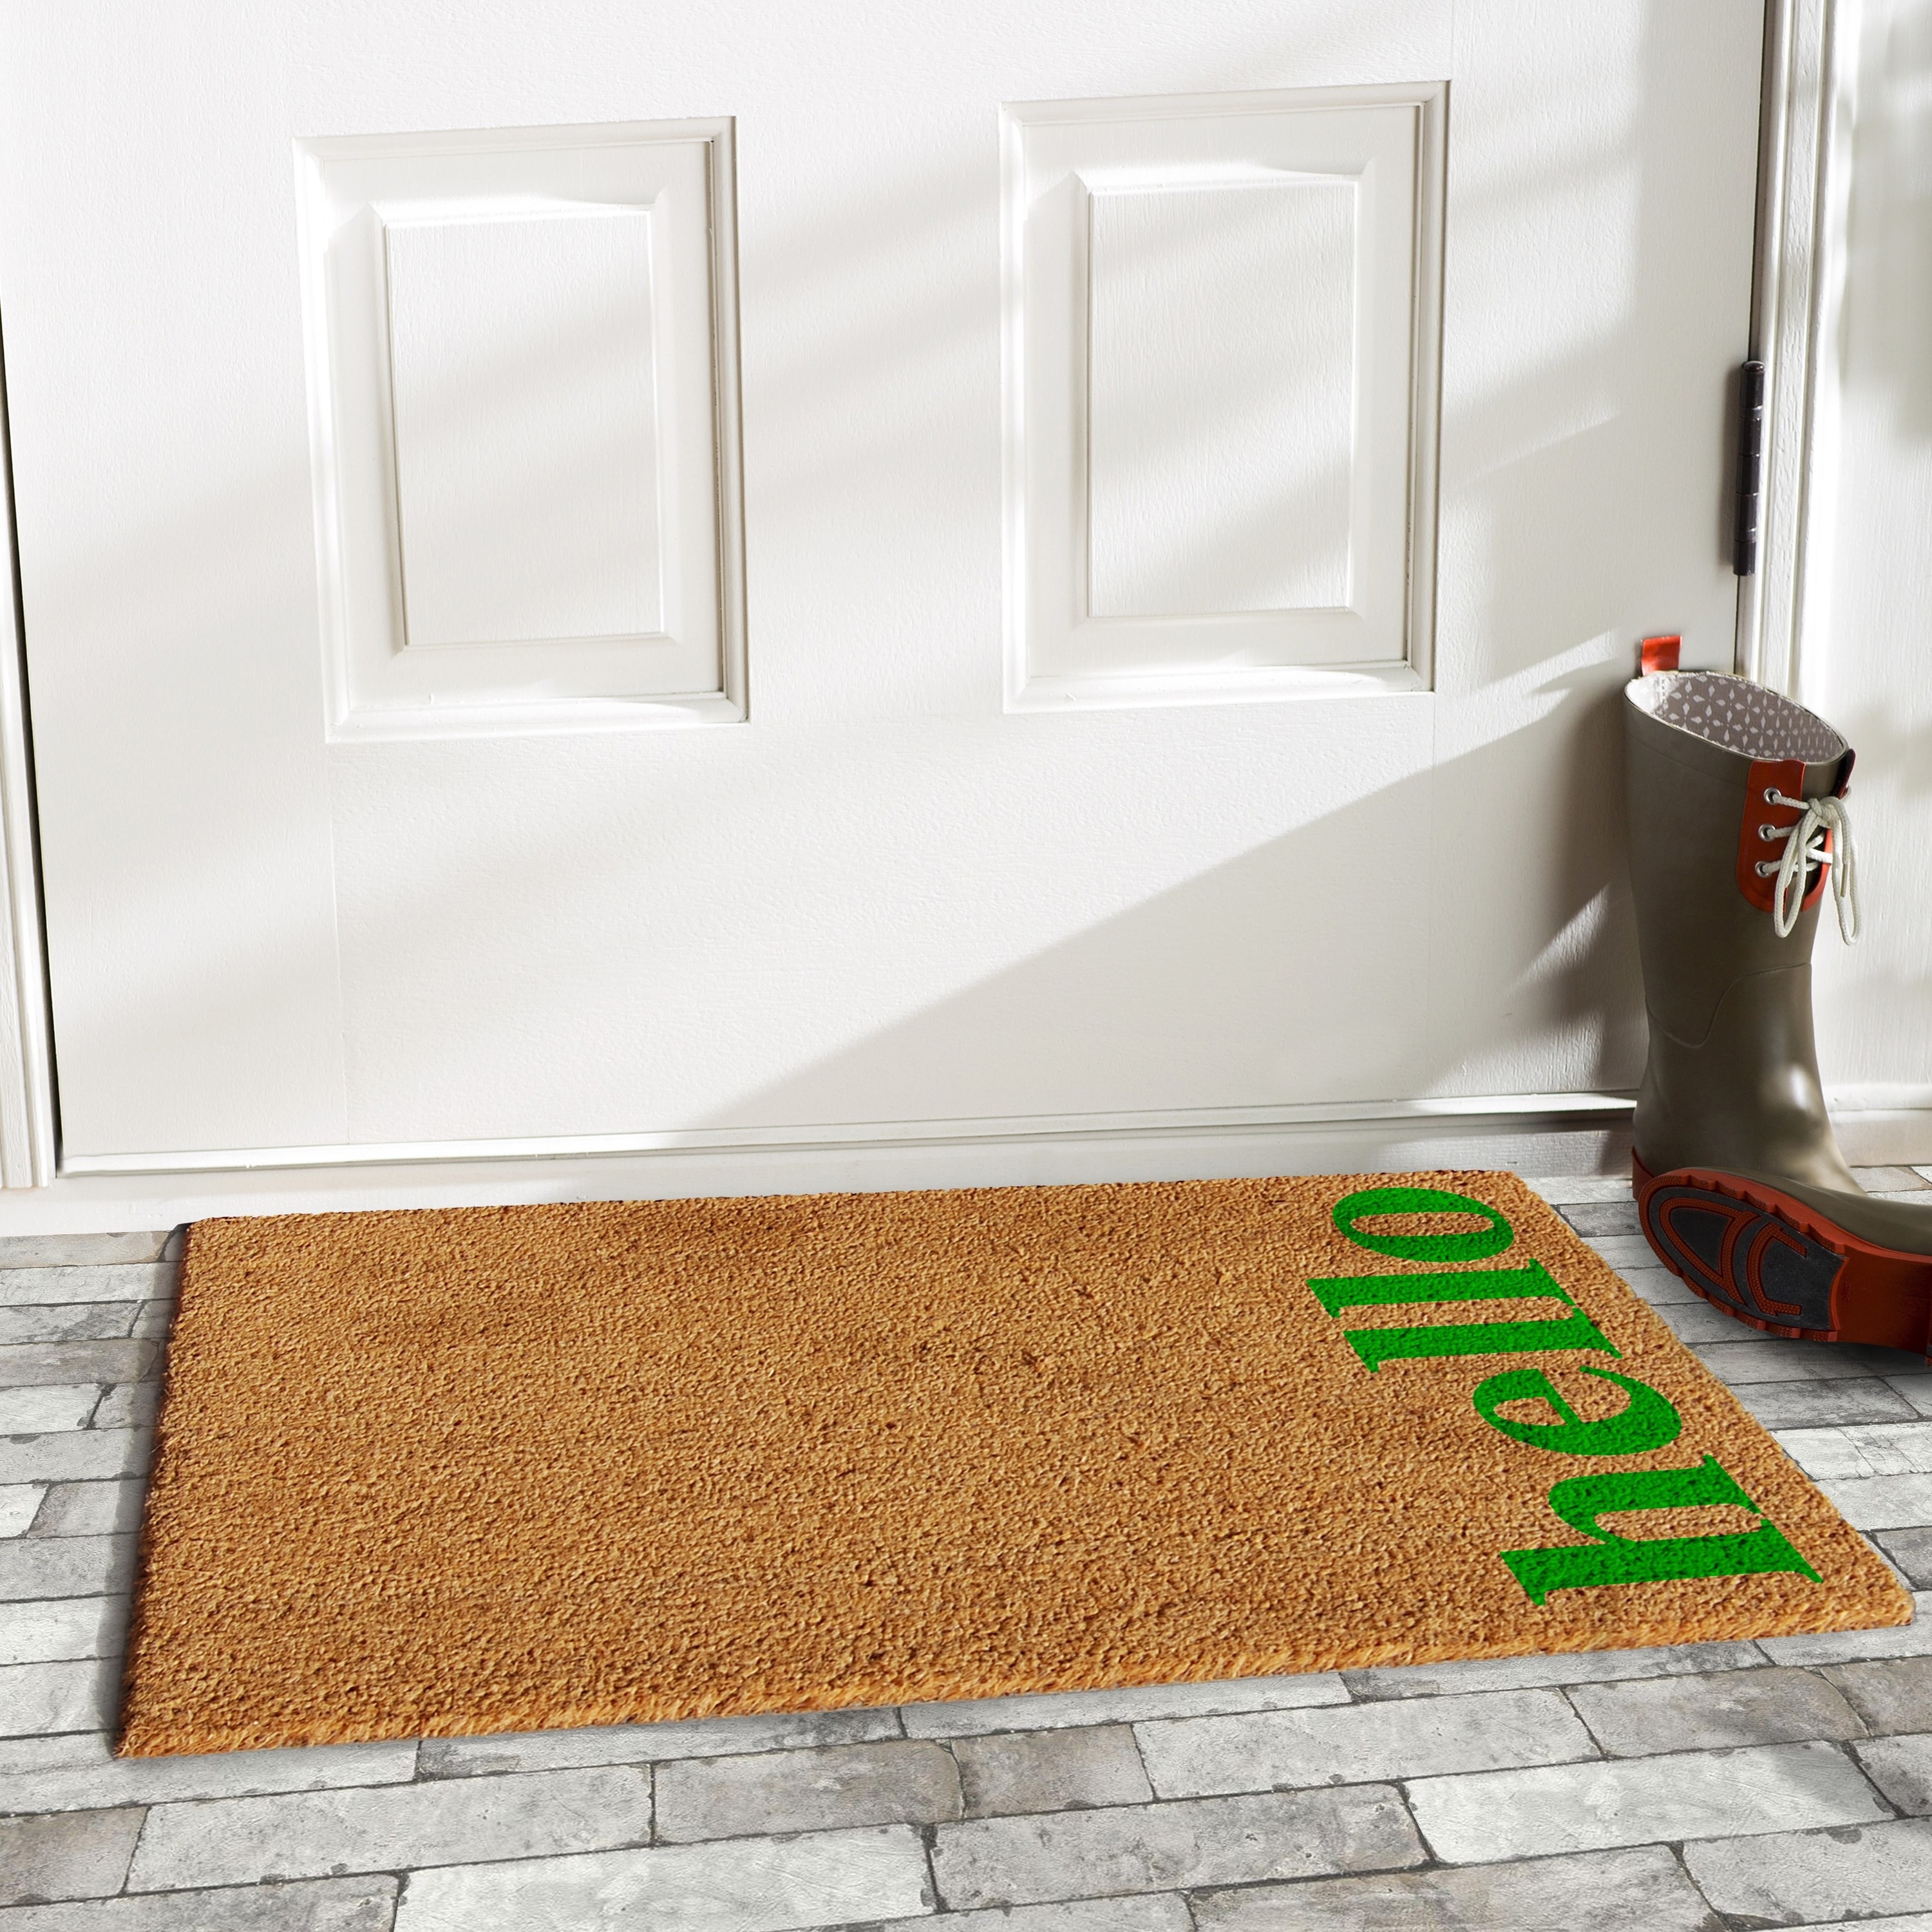 coir doormat with green hello